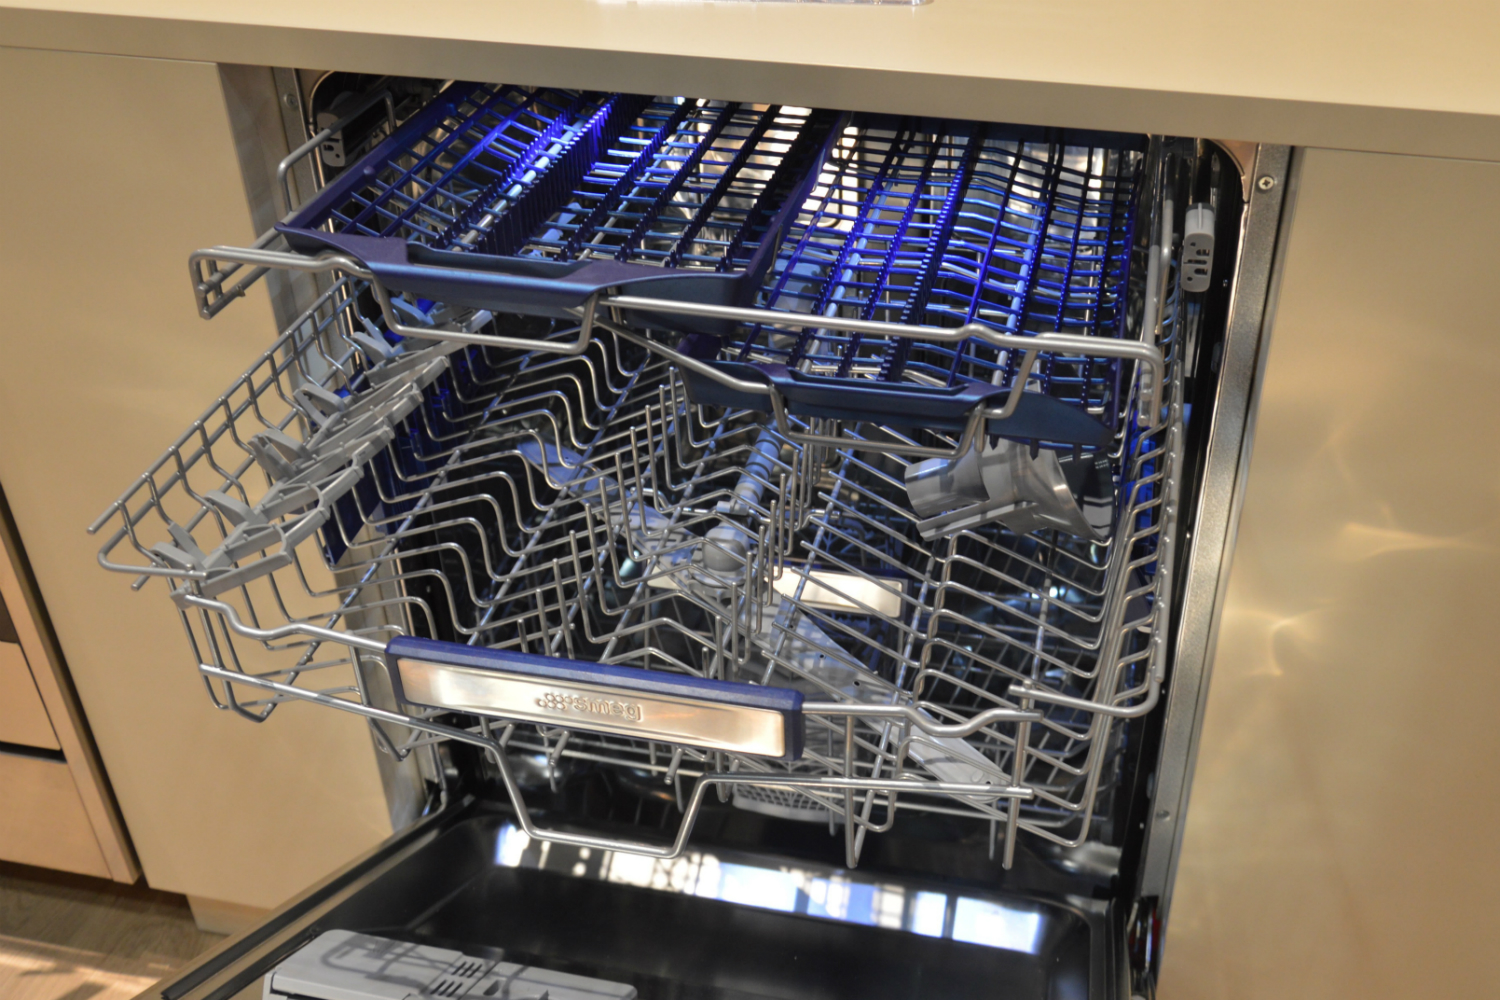 appliance trends kbis 2017 smeg third rack dishwasher 3